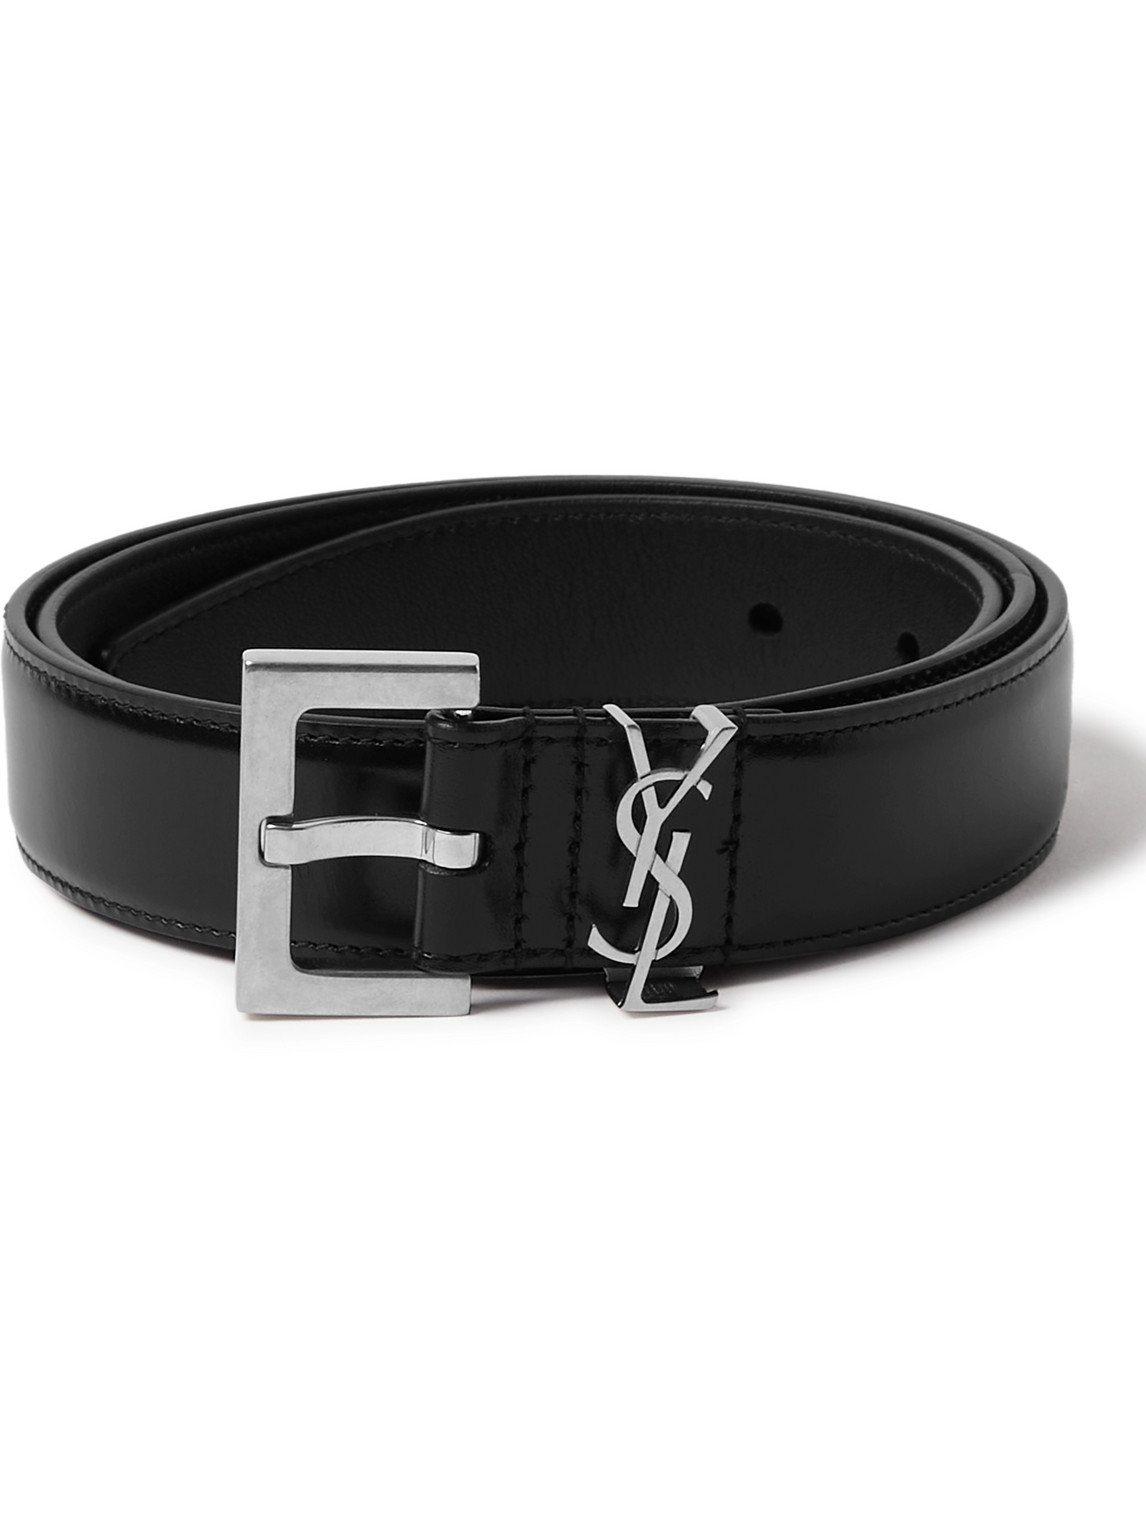 SAINT LAURENT - 3cm Leather Belt - Men - Black - EU 100 von SAINT LAURENT